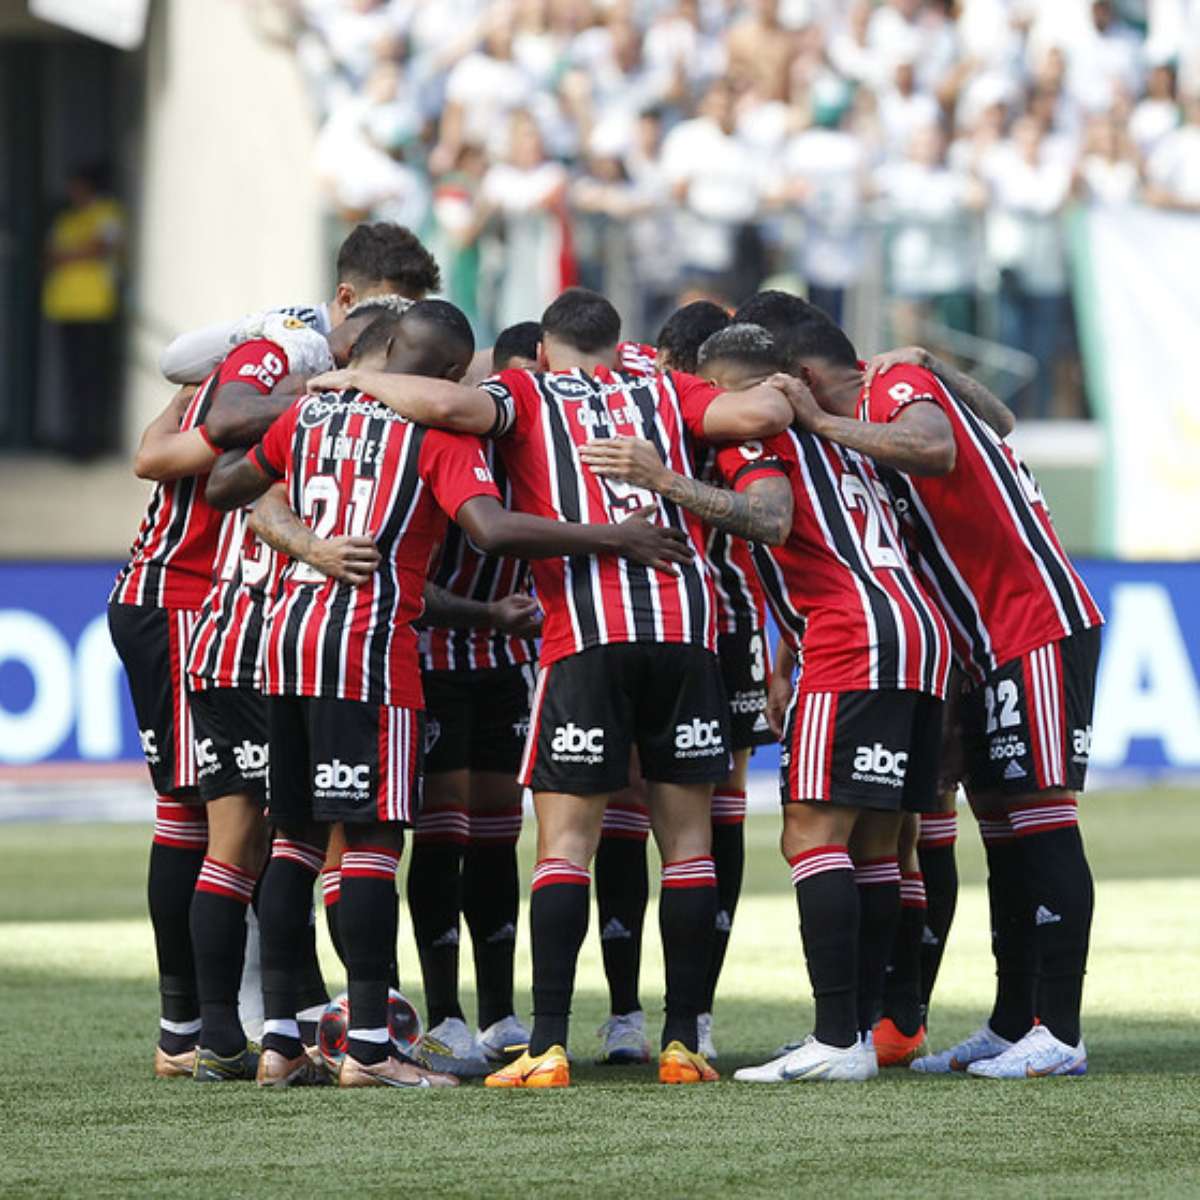 Veja a seleção do Campeonato Paulista de 2022 - Gazeta Esportiva